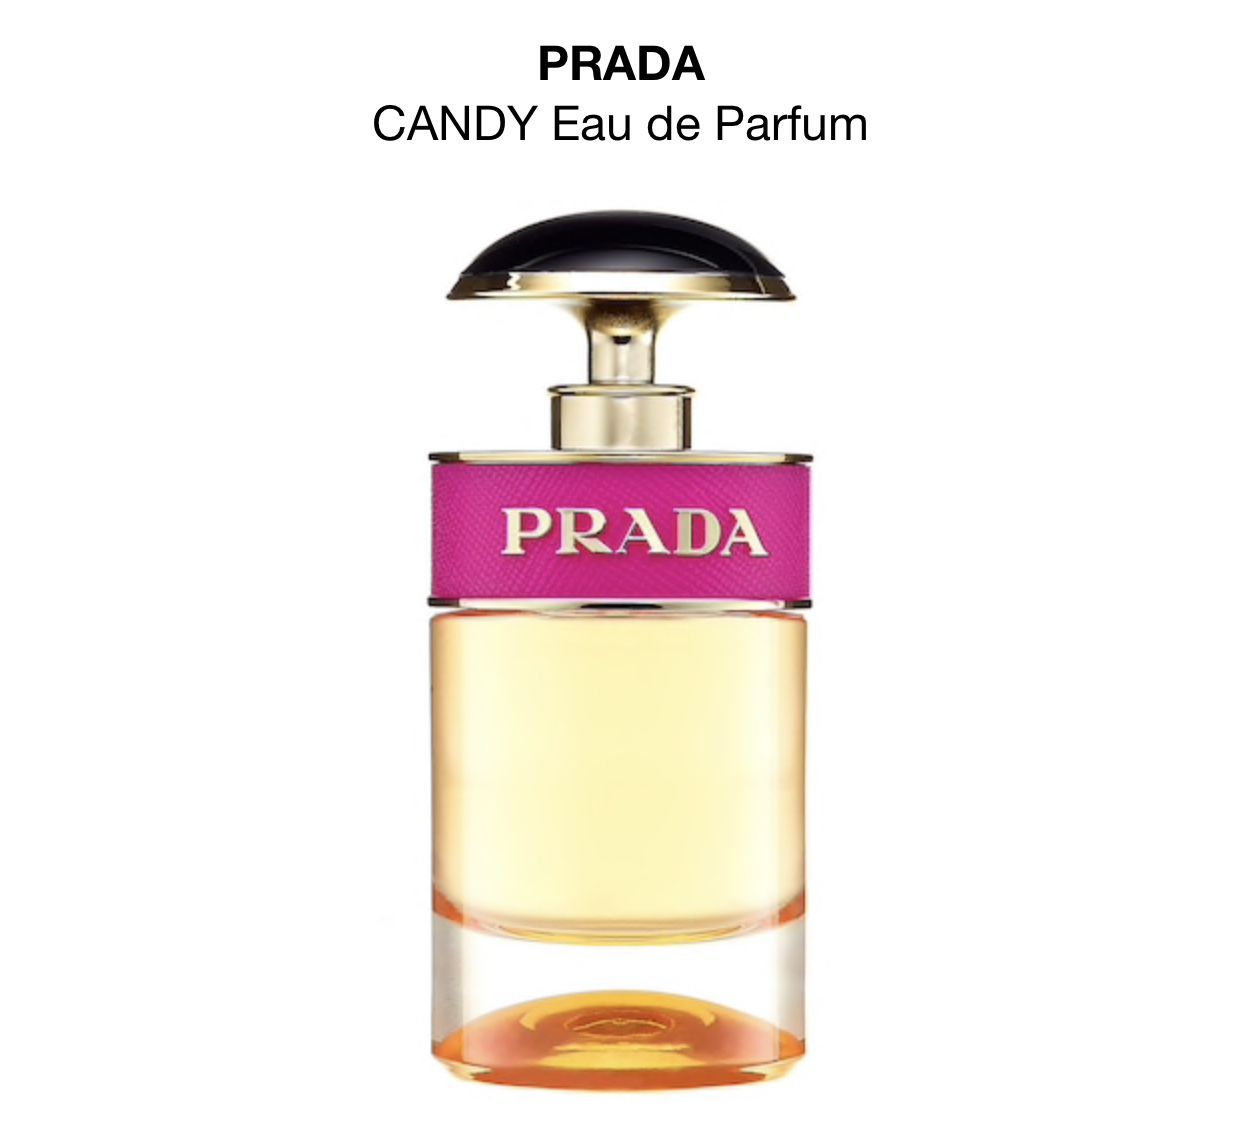 PRADA $74.00 1 oz Eau de Parfum Spray